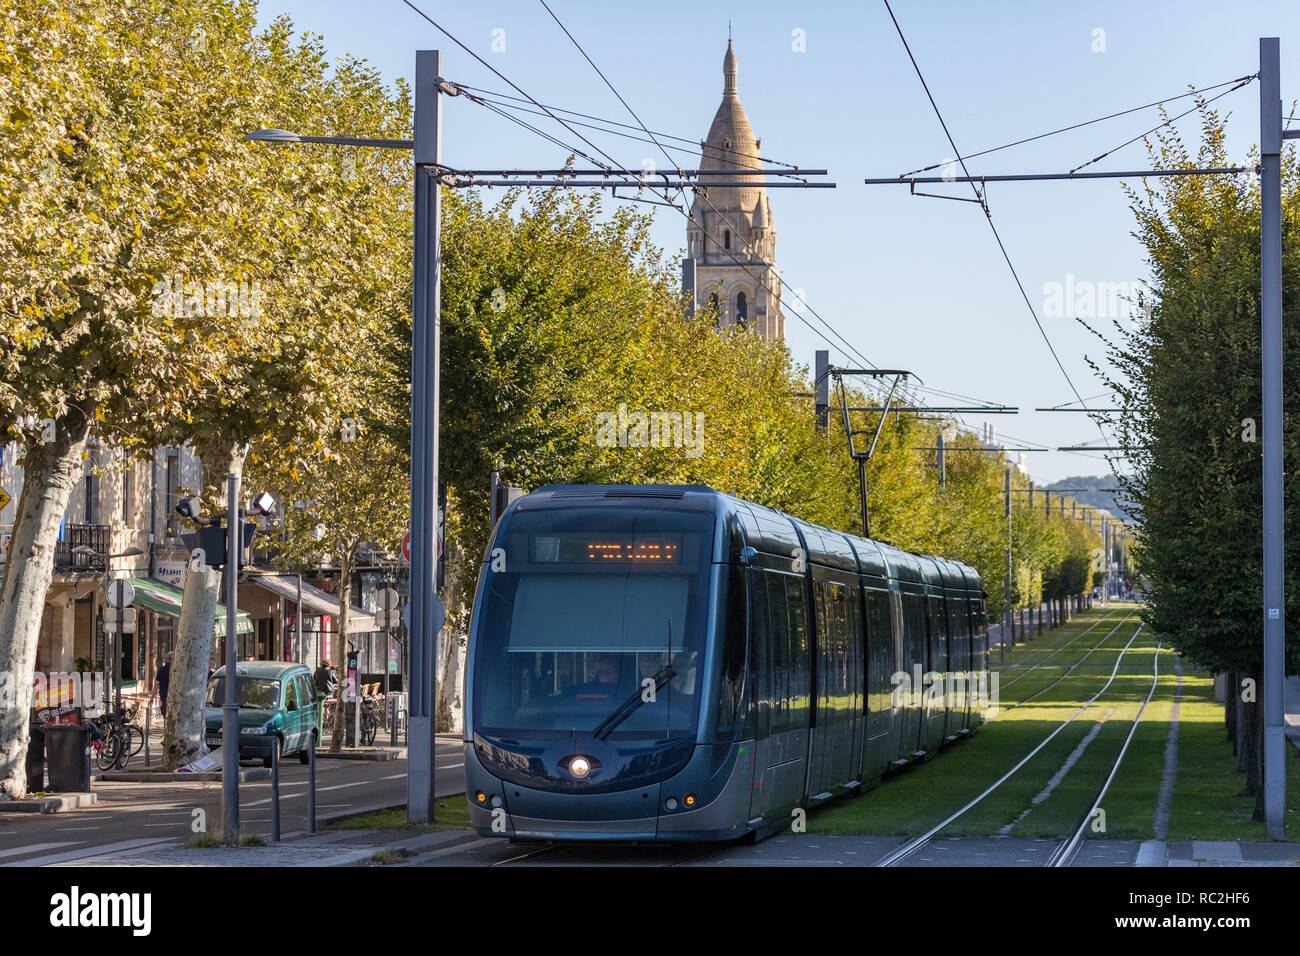 Bordeaux, Frankreich - 27 September, 2018: die Straßenbahn durch die von Bäumen gesäumten Straßen der Stadt Bordeaux. Stockfoto